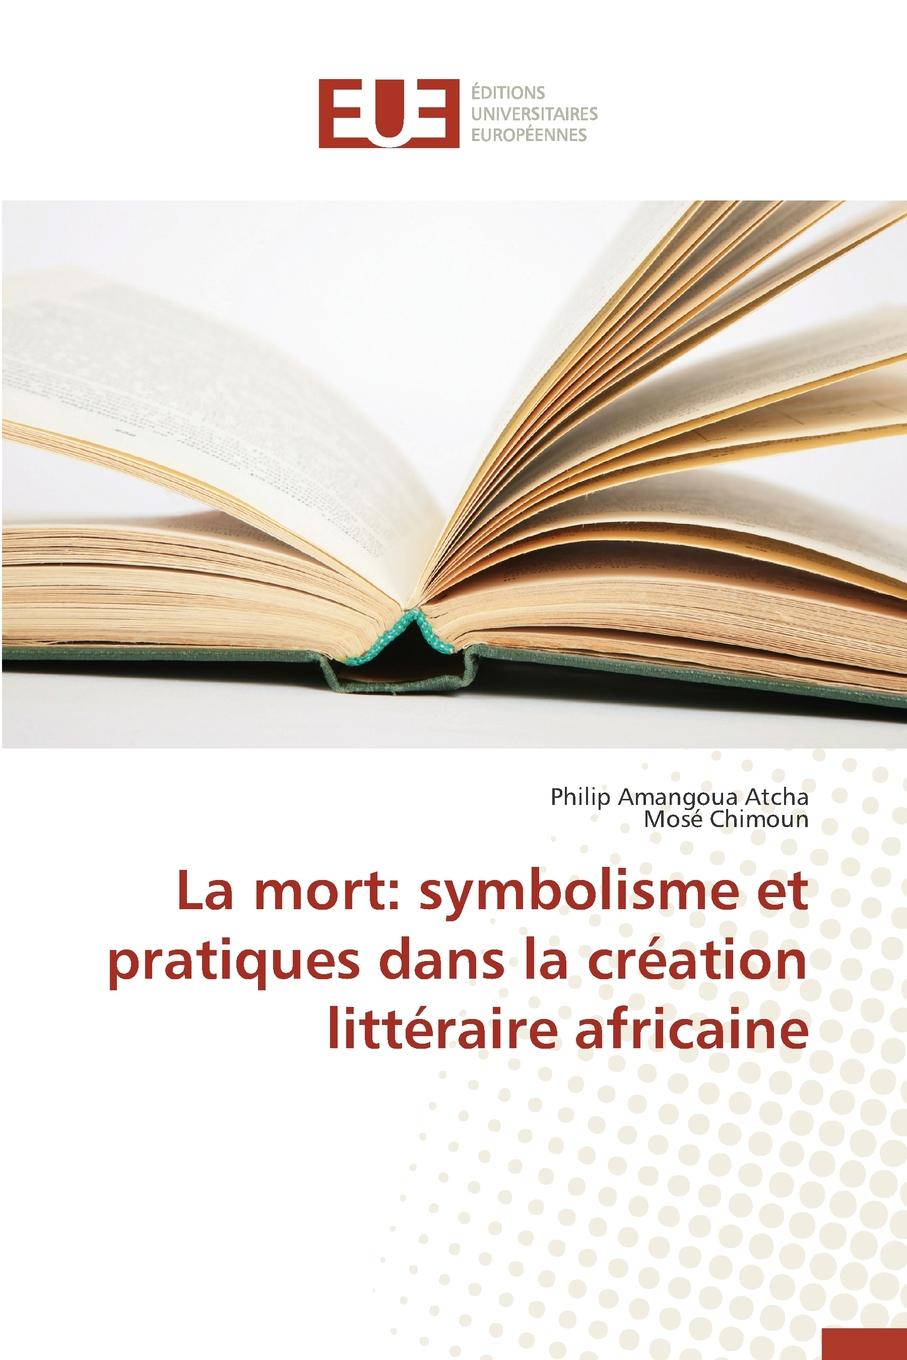 La mort. symbolisme et pratiques dans la creation litteraire africaine